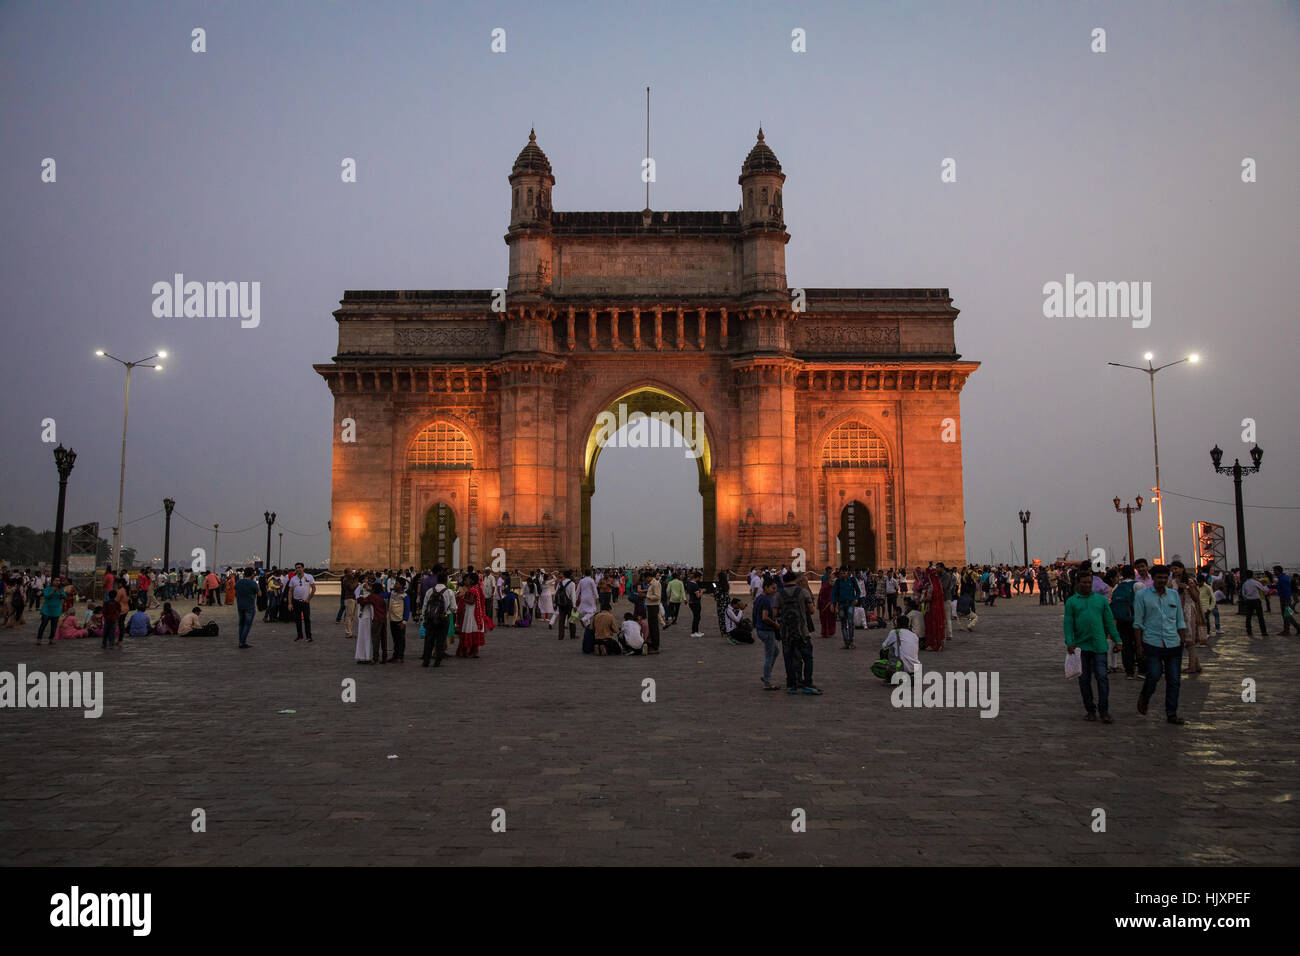 La porte de l'Inde sur le front de mer de Colaba, Mumbai (Bombay), Inde. Banque D'Images